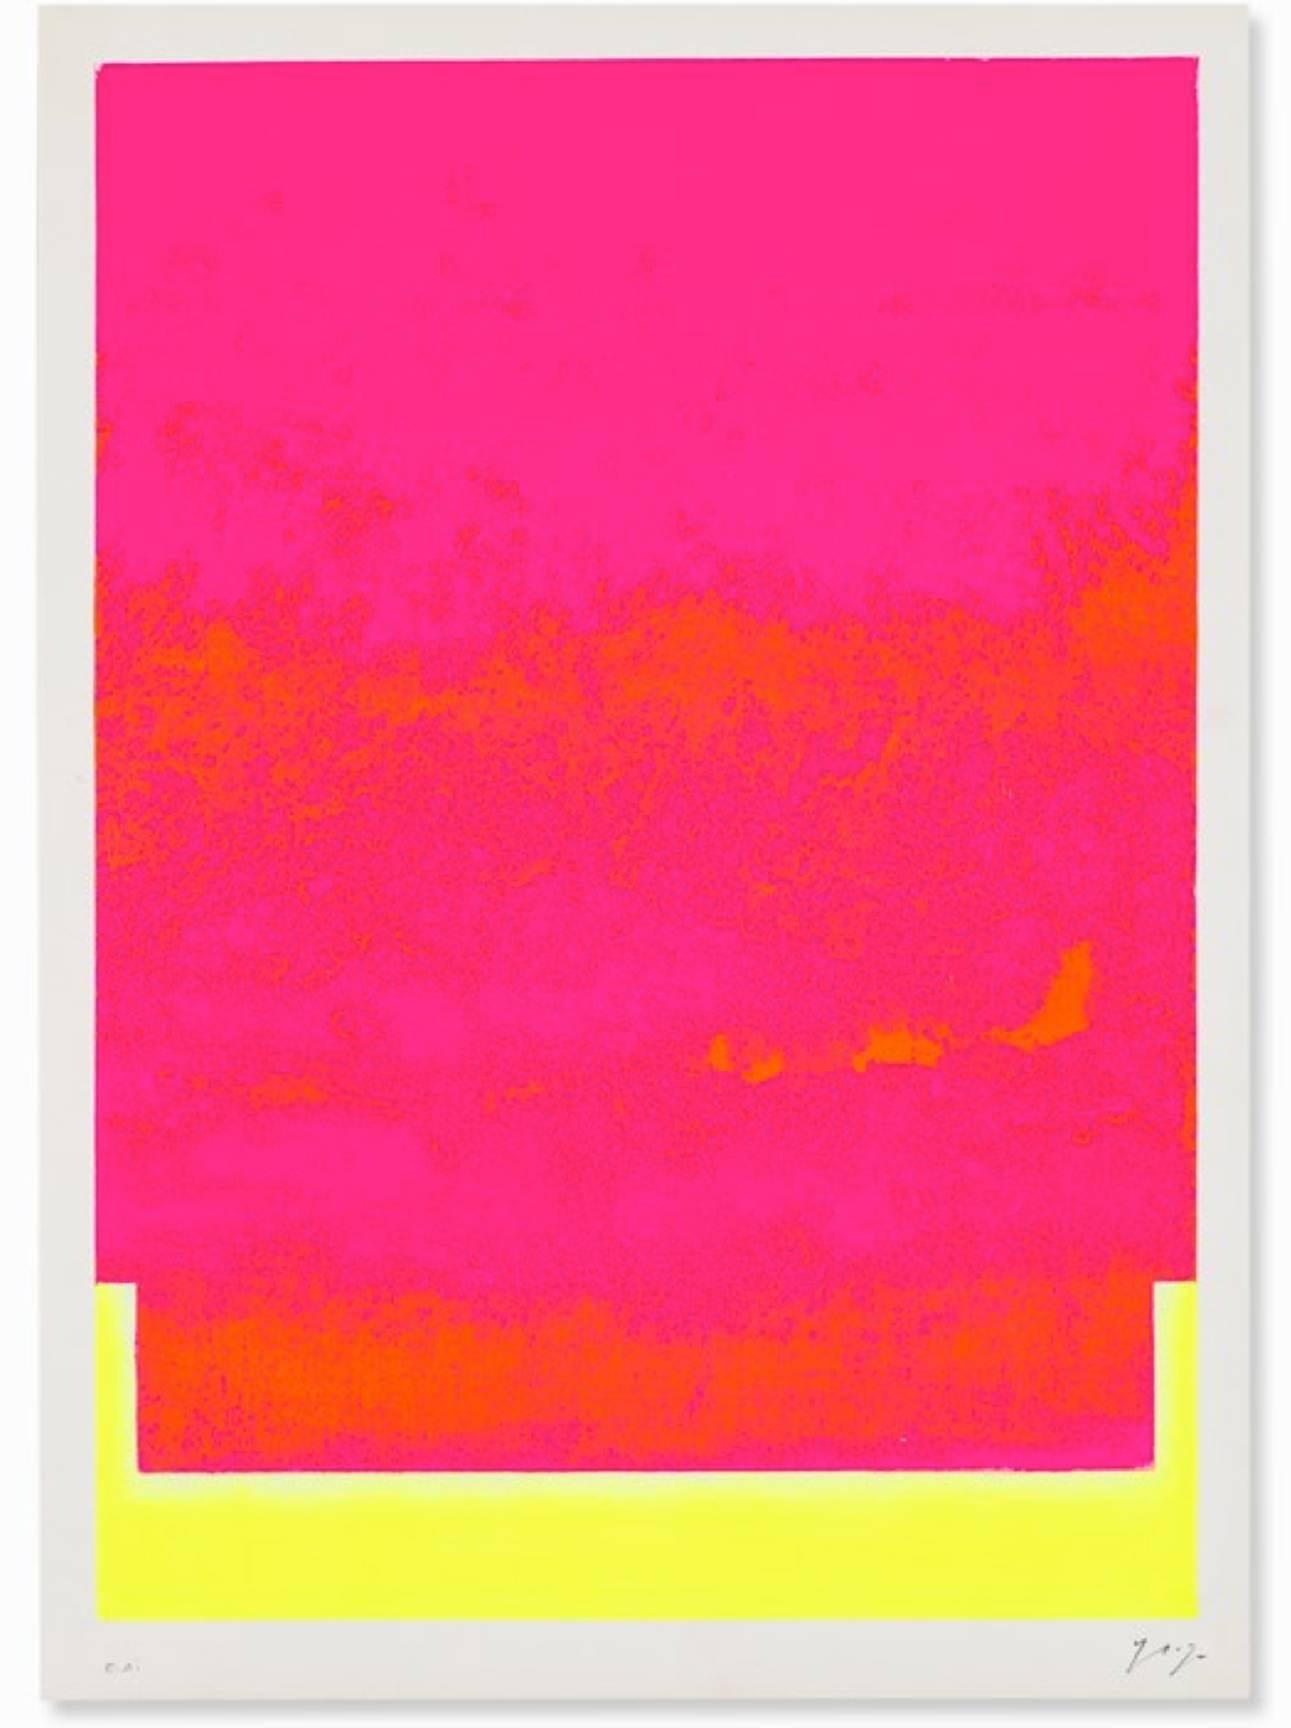 Rupprecht Geiger Abstract Print – Roter Zehnmal rot (Zweimalrot)